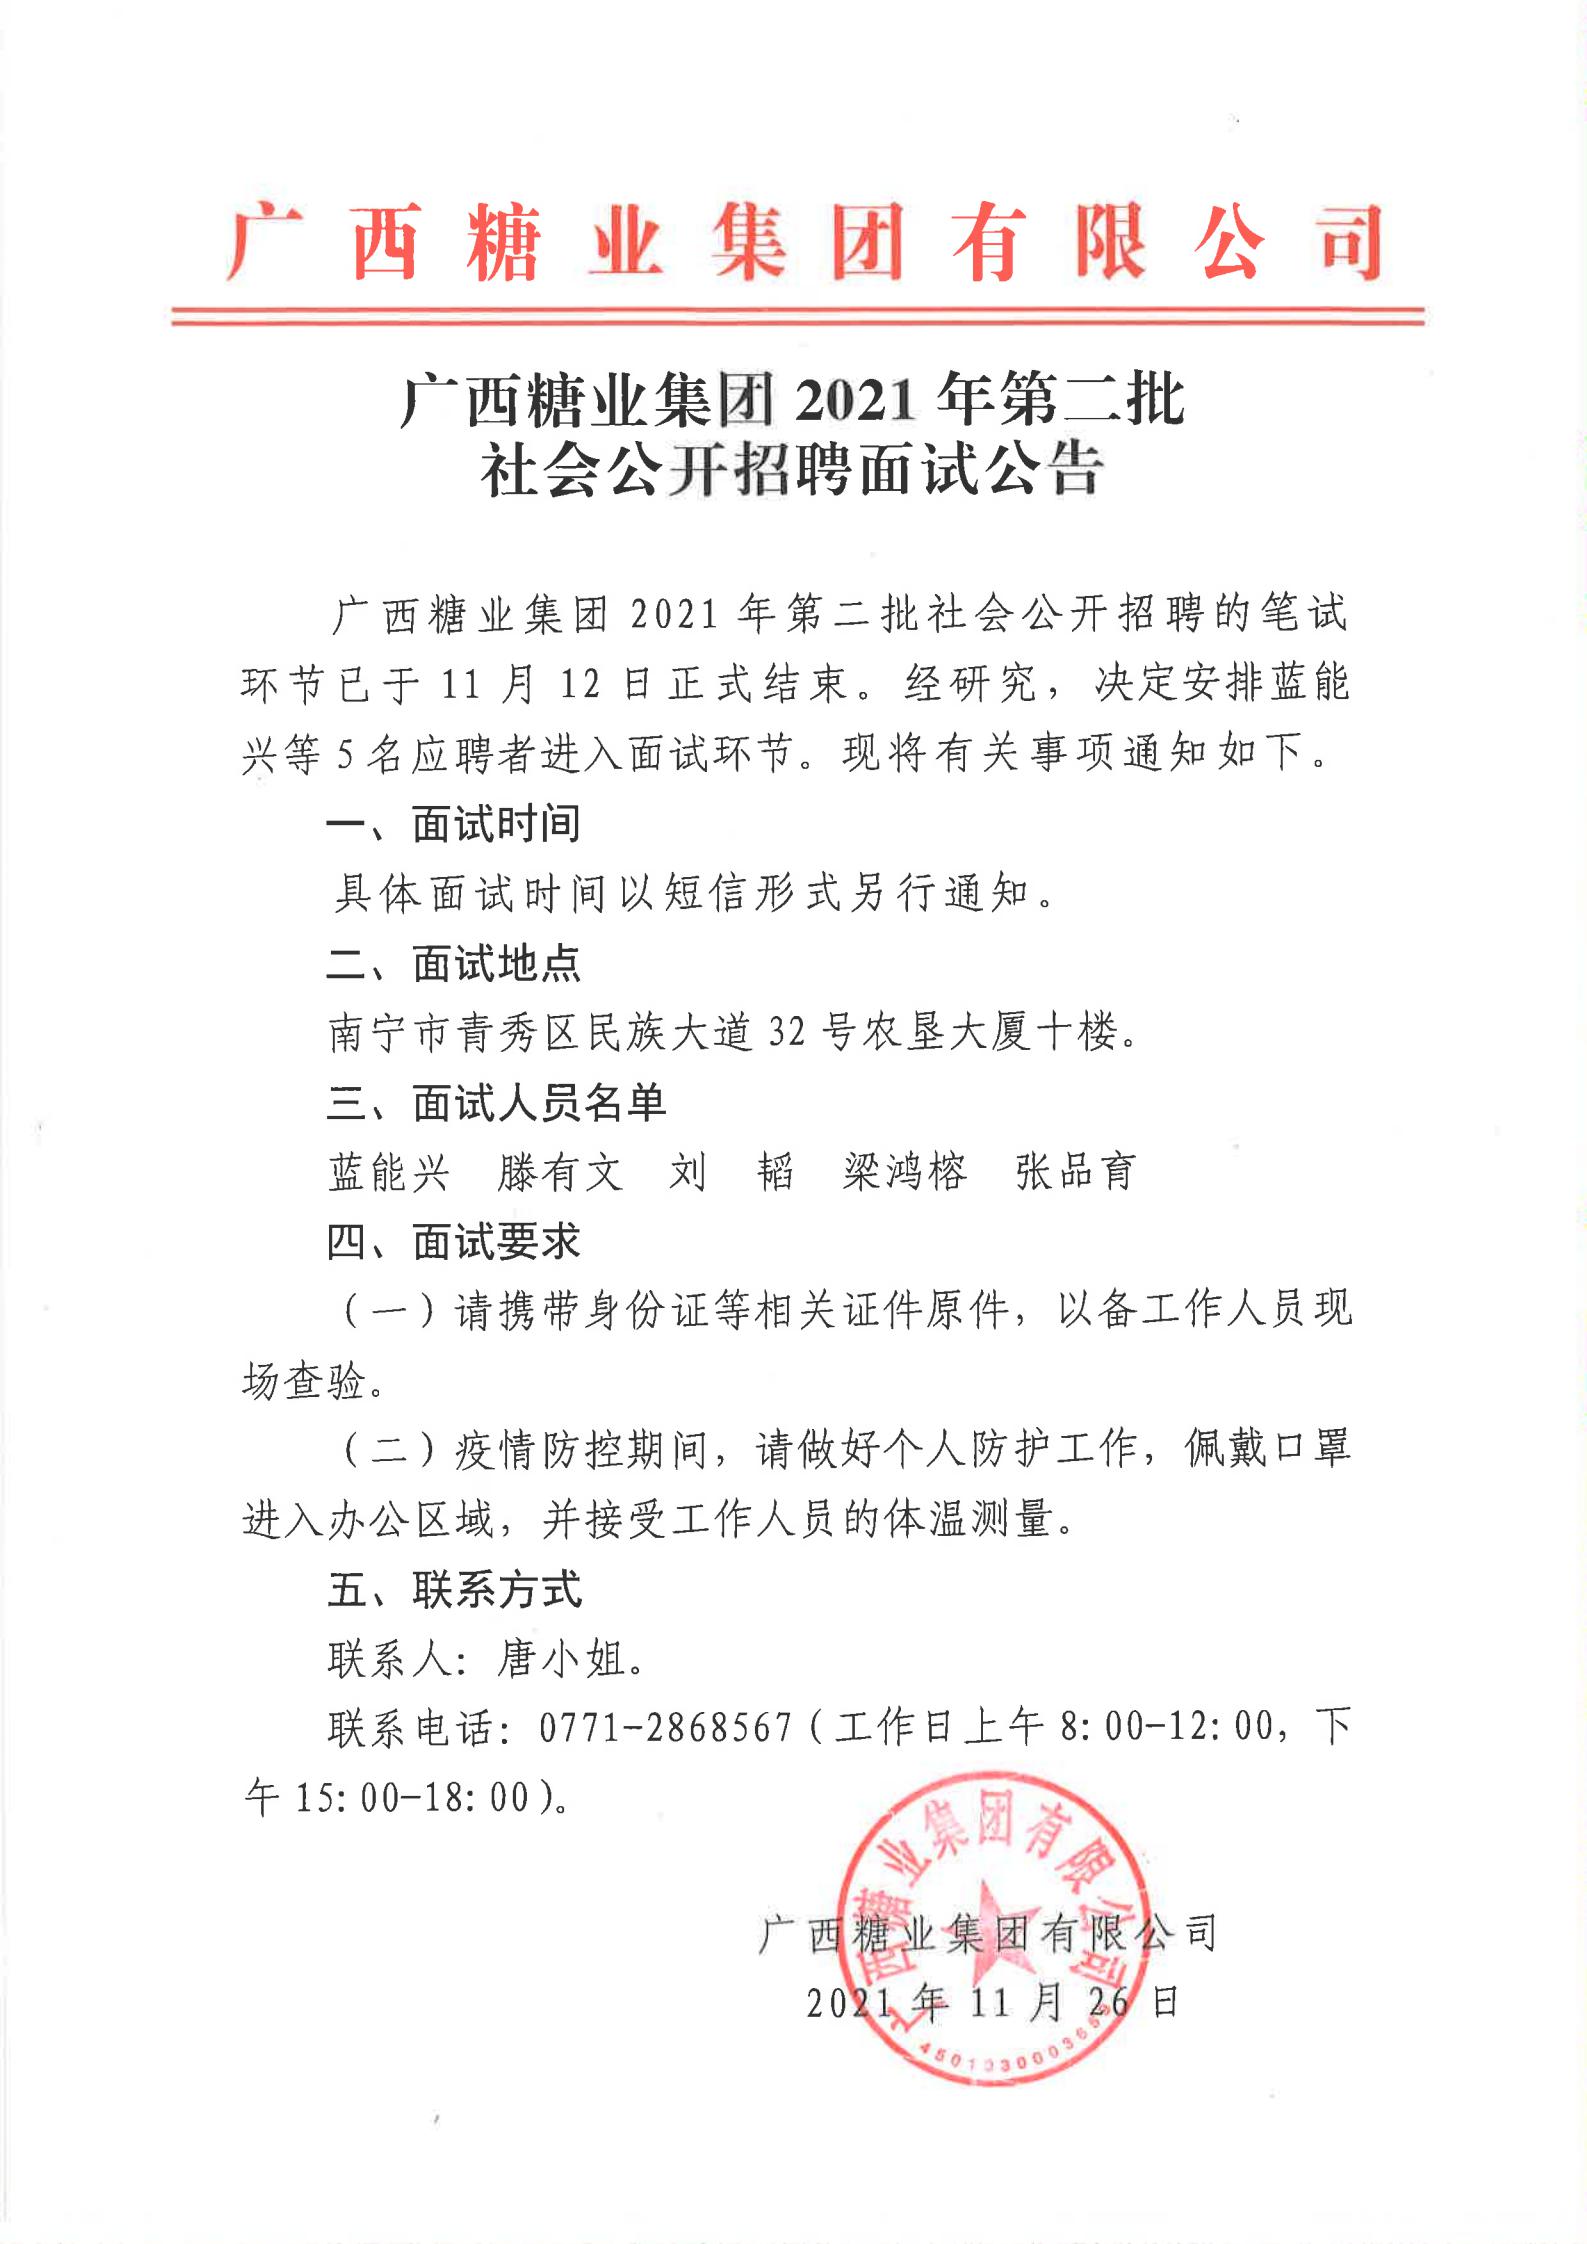 广西糖业集团2021年第二批社会公开招聘面试公告_00.jpg